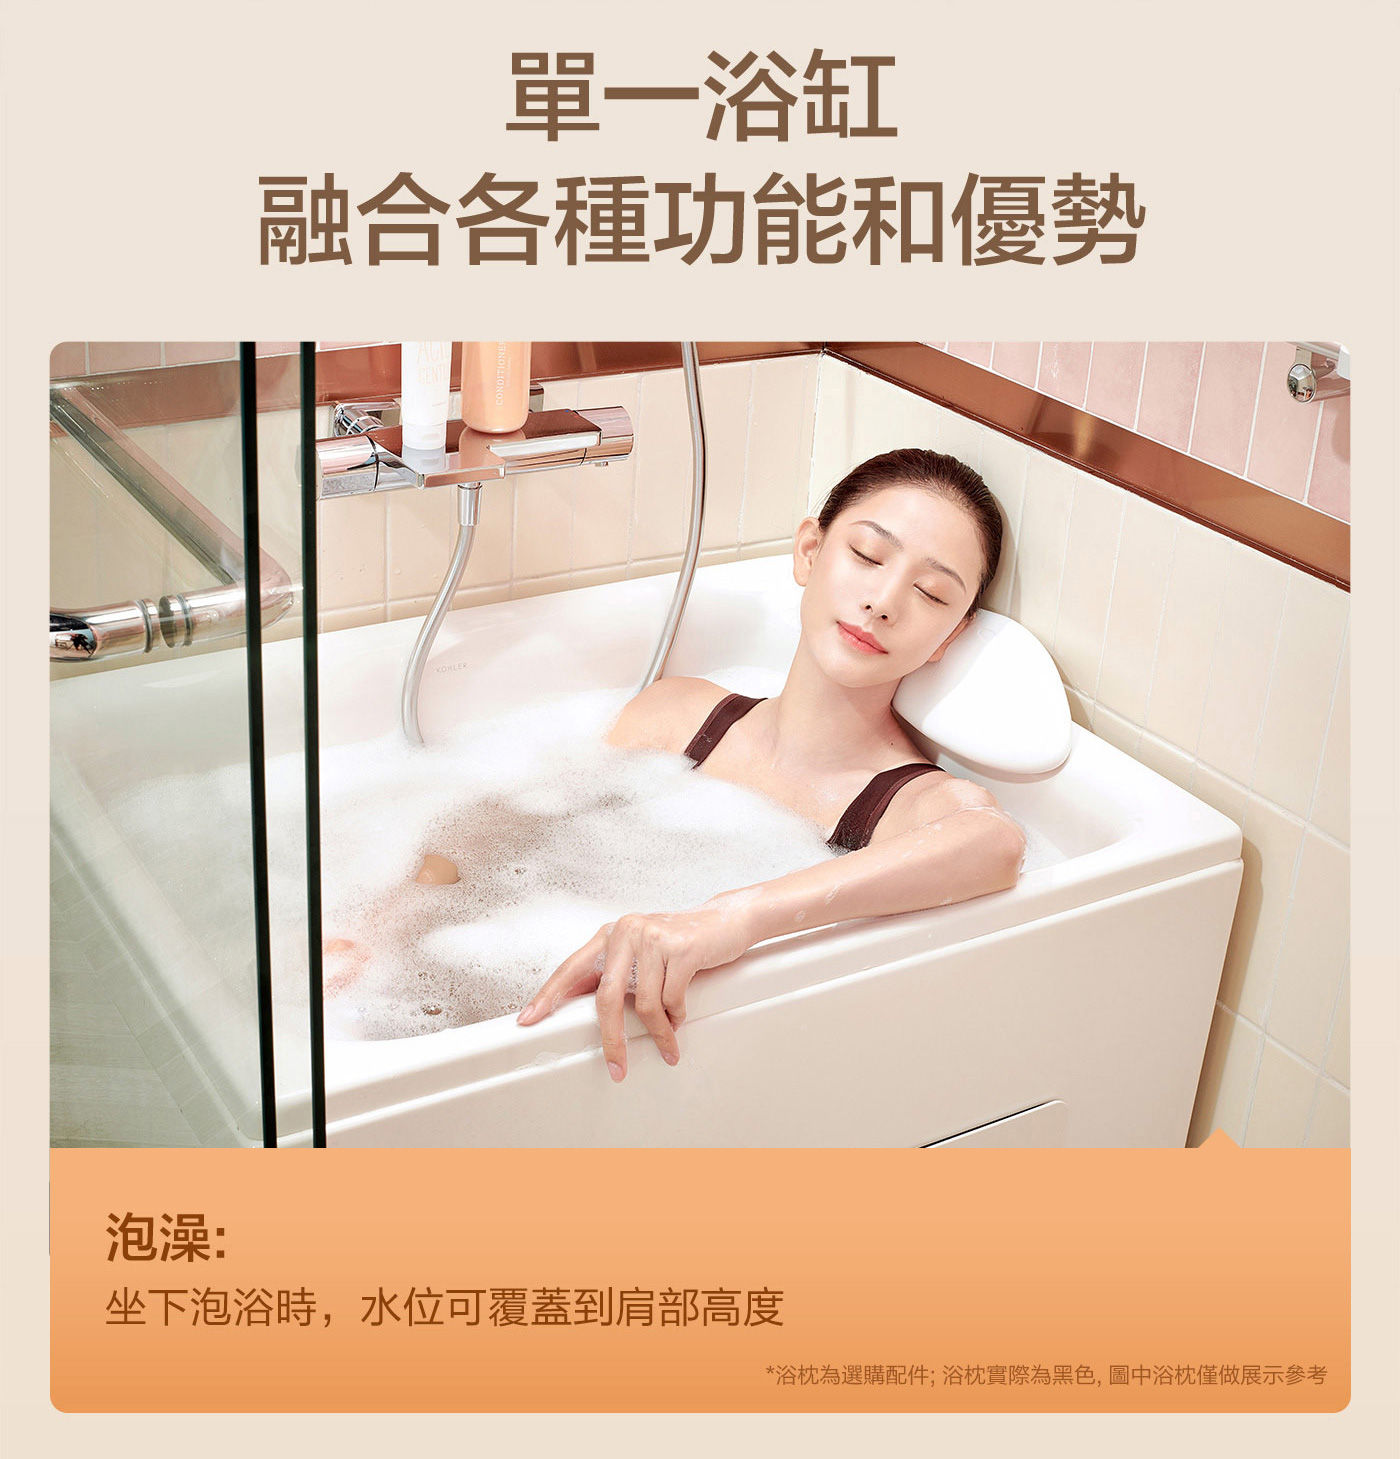 KOHLER 座臥式浴缸右角位 帶腳蹬單一浴缸融合各種功能和優勢